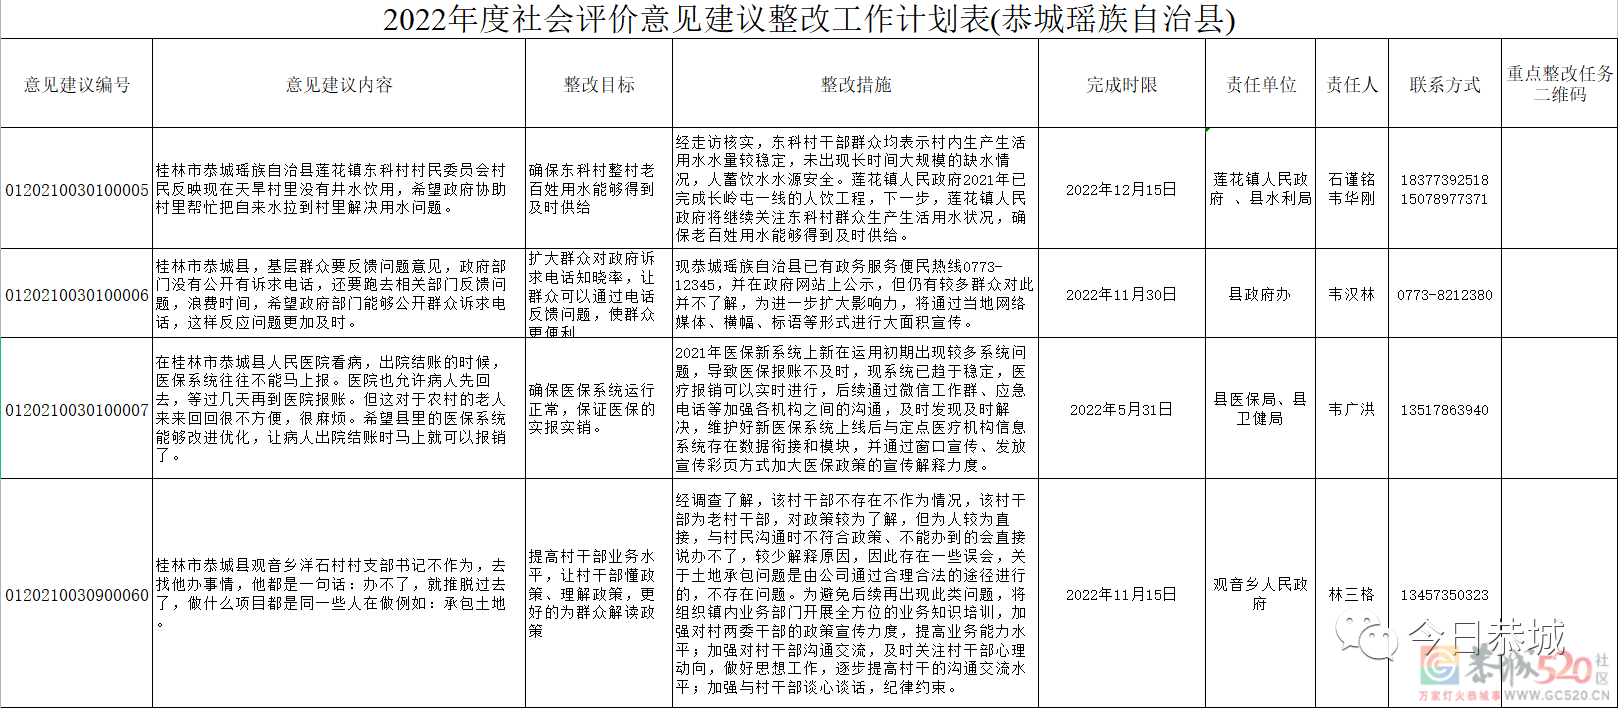 恭城瑶族自治县2022年度自治区反馈群众意见建议整改公示64 / 作者:论坛小编01 / 帖子ID:296125